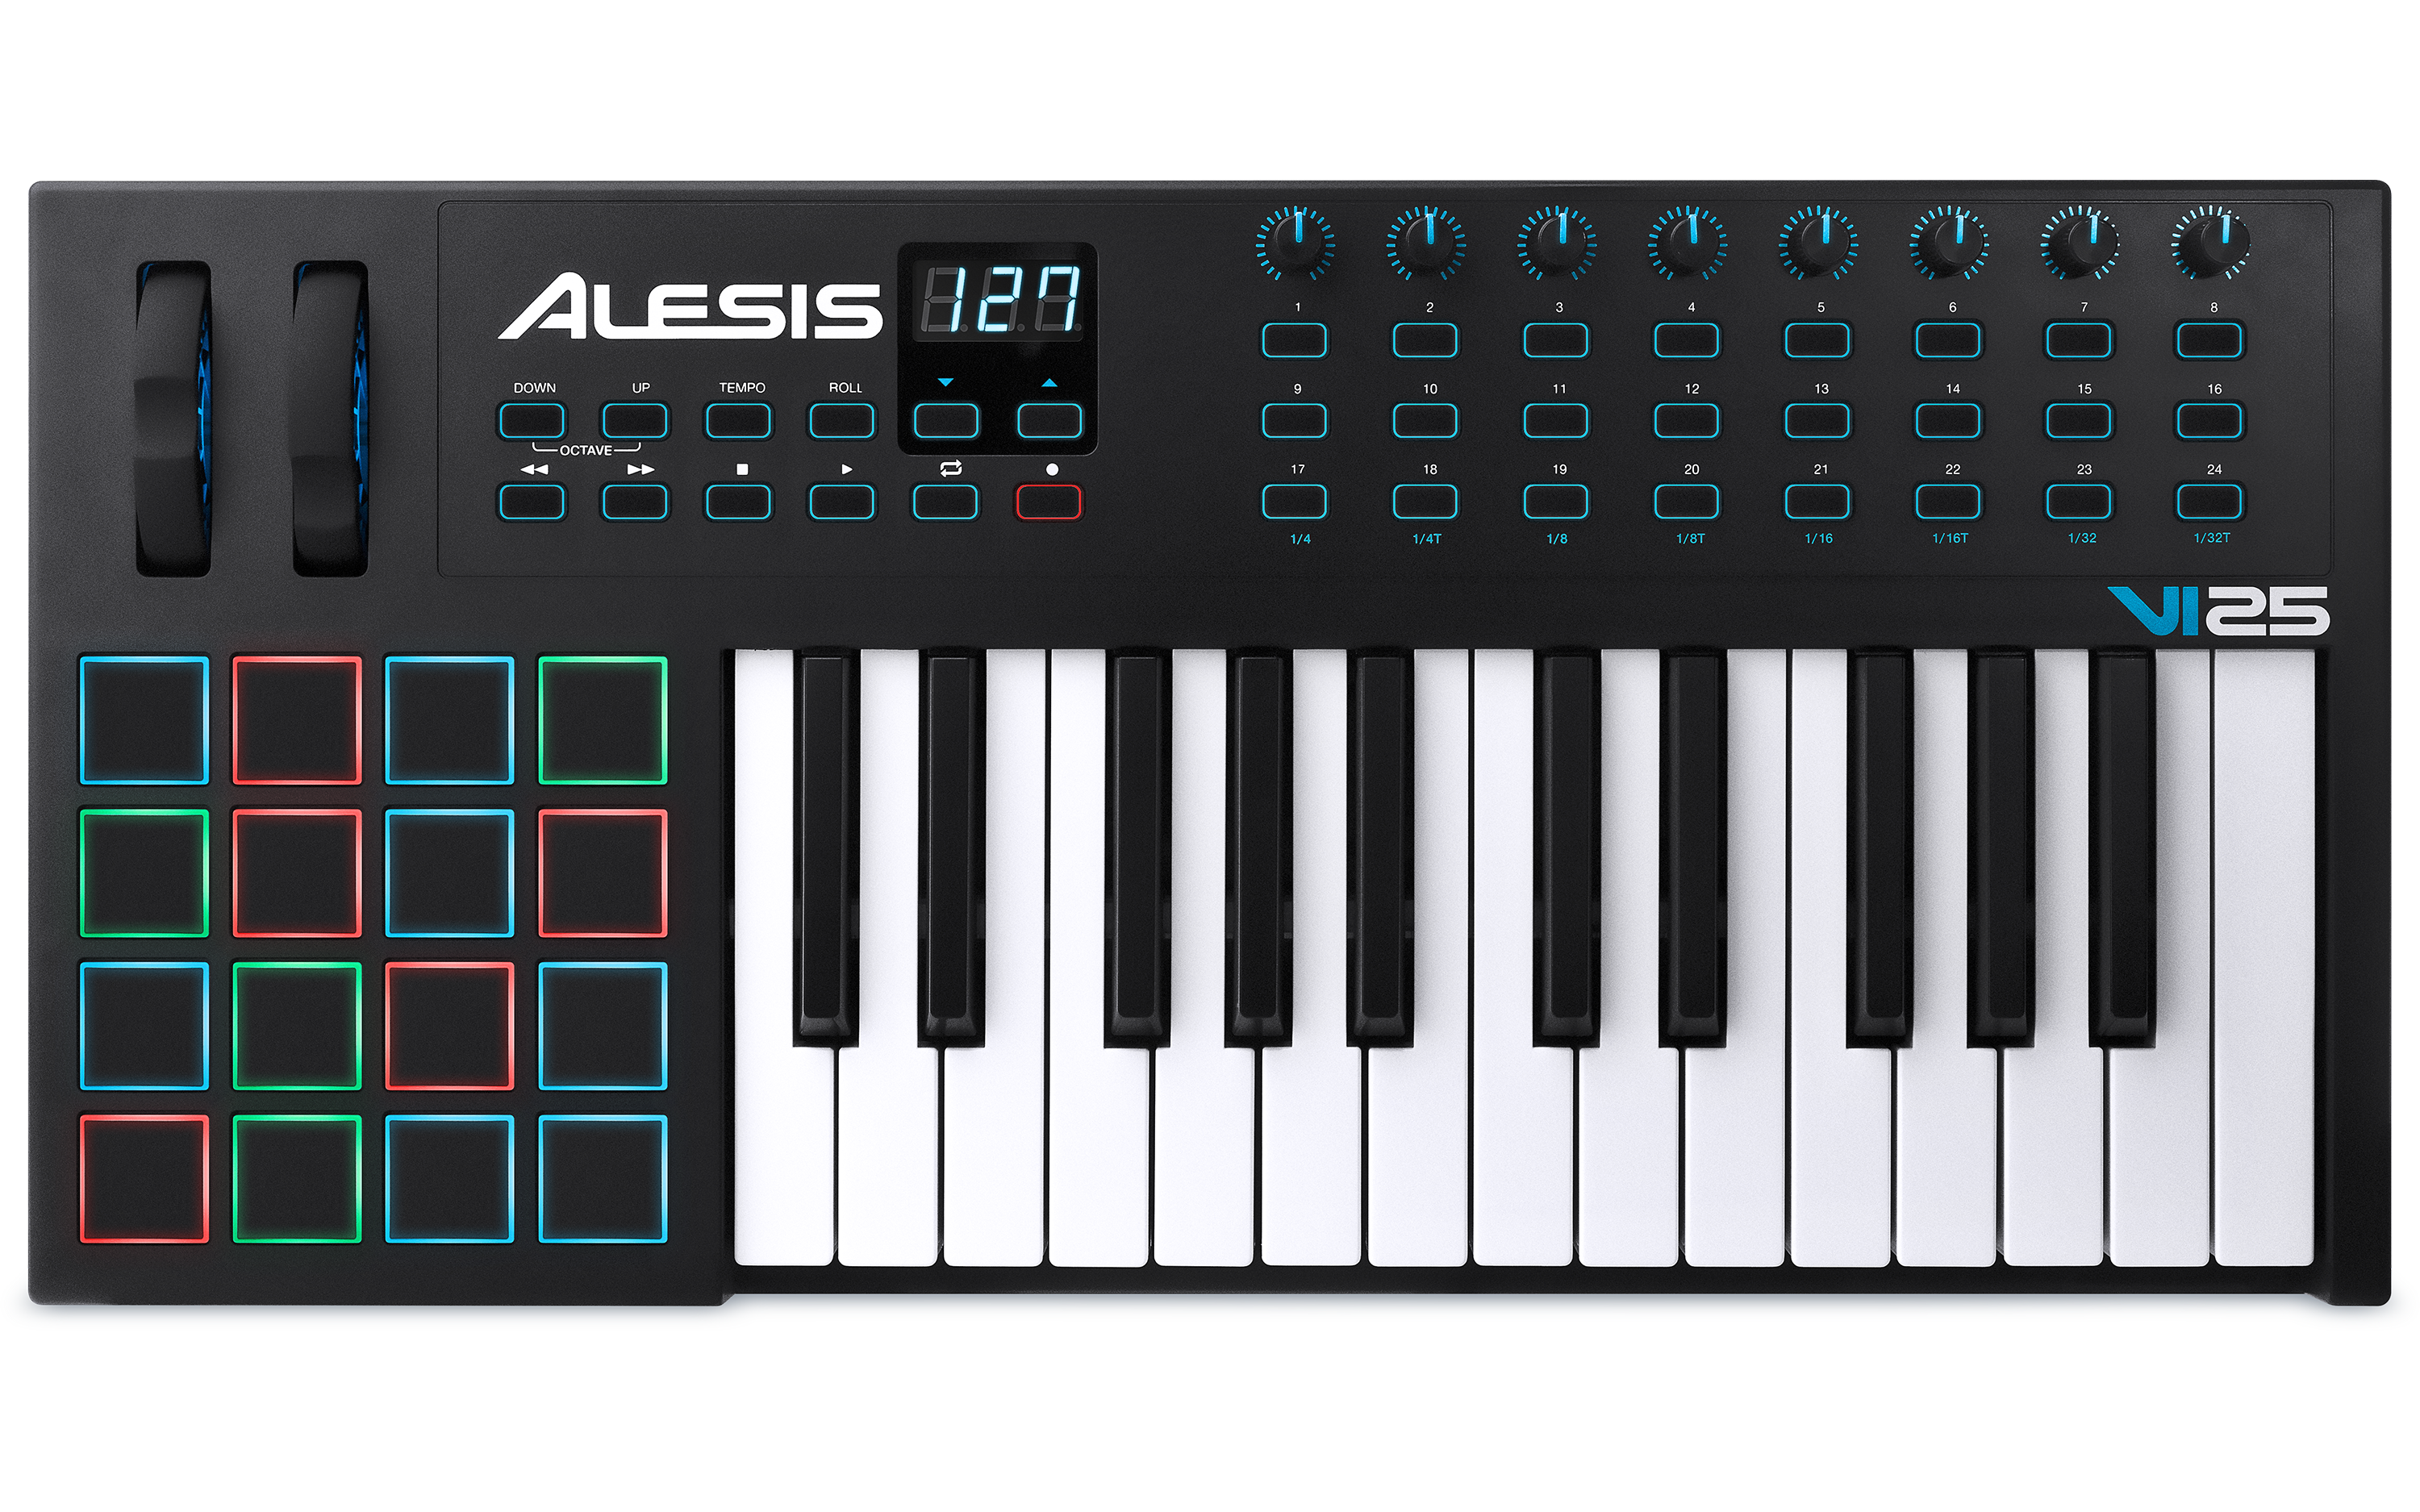 Køb Alesis vi25 Midi keyboard - Pris 1249.00 kr.